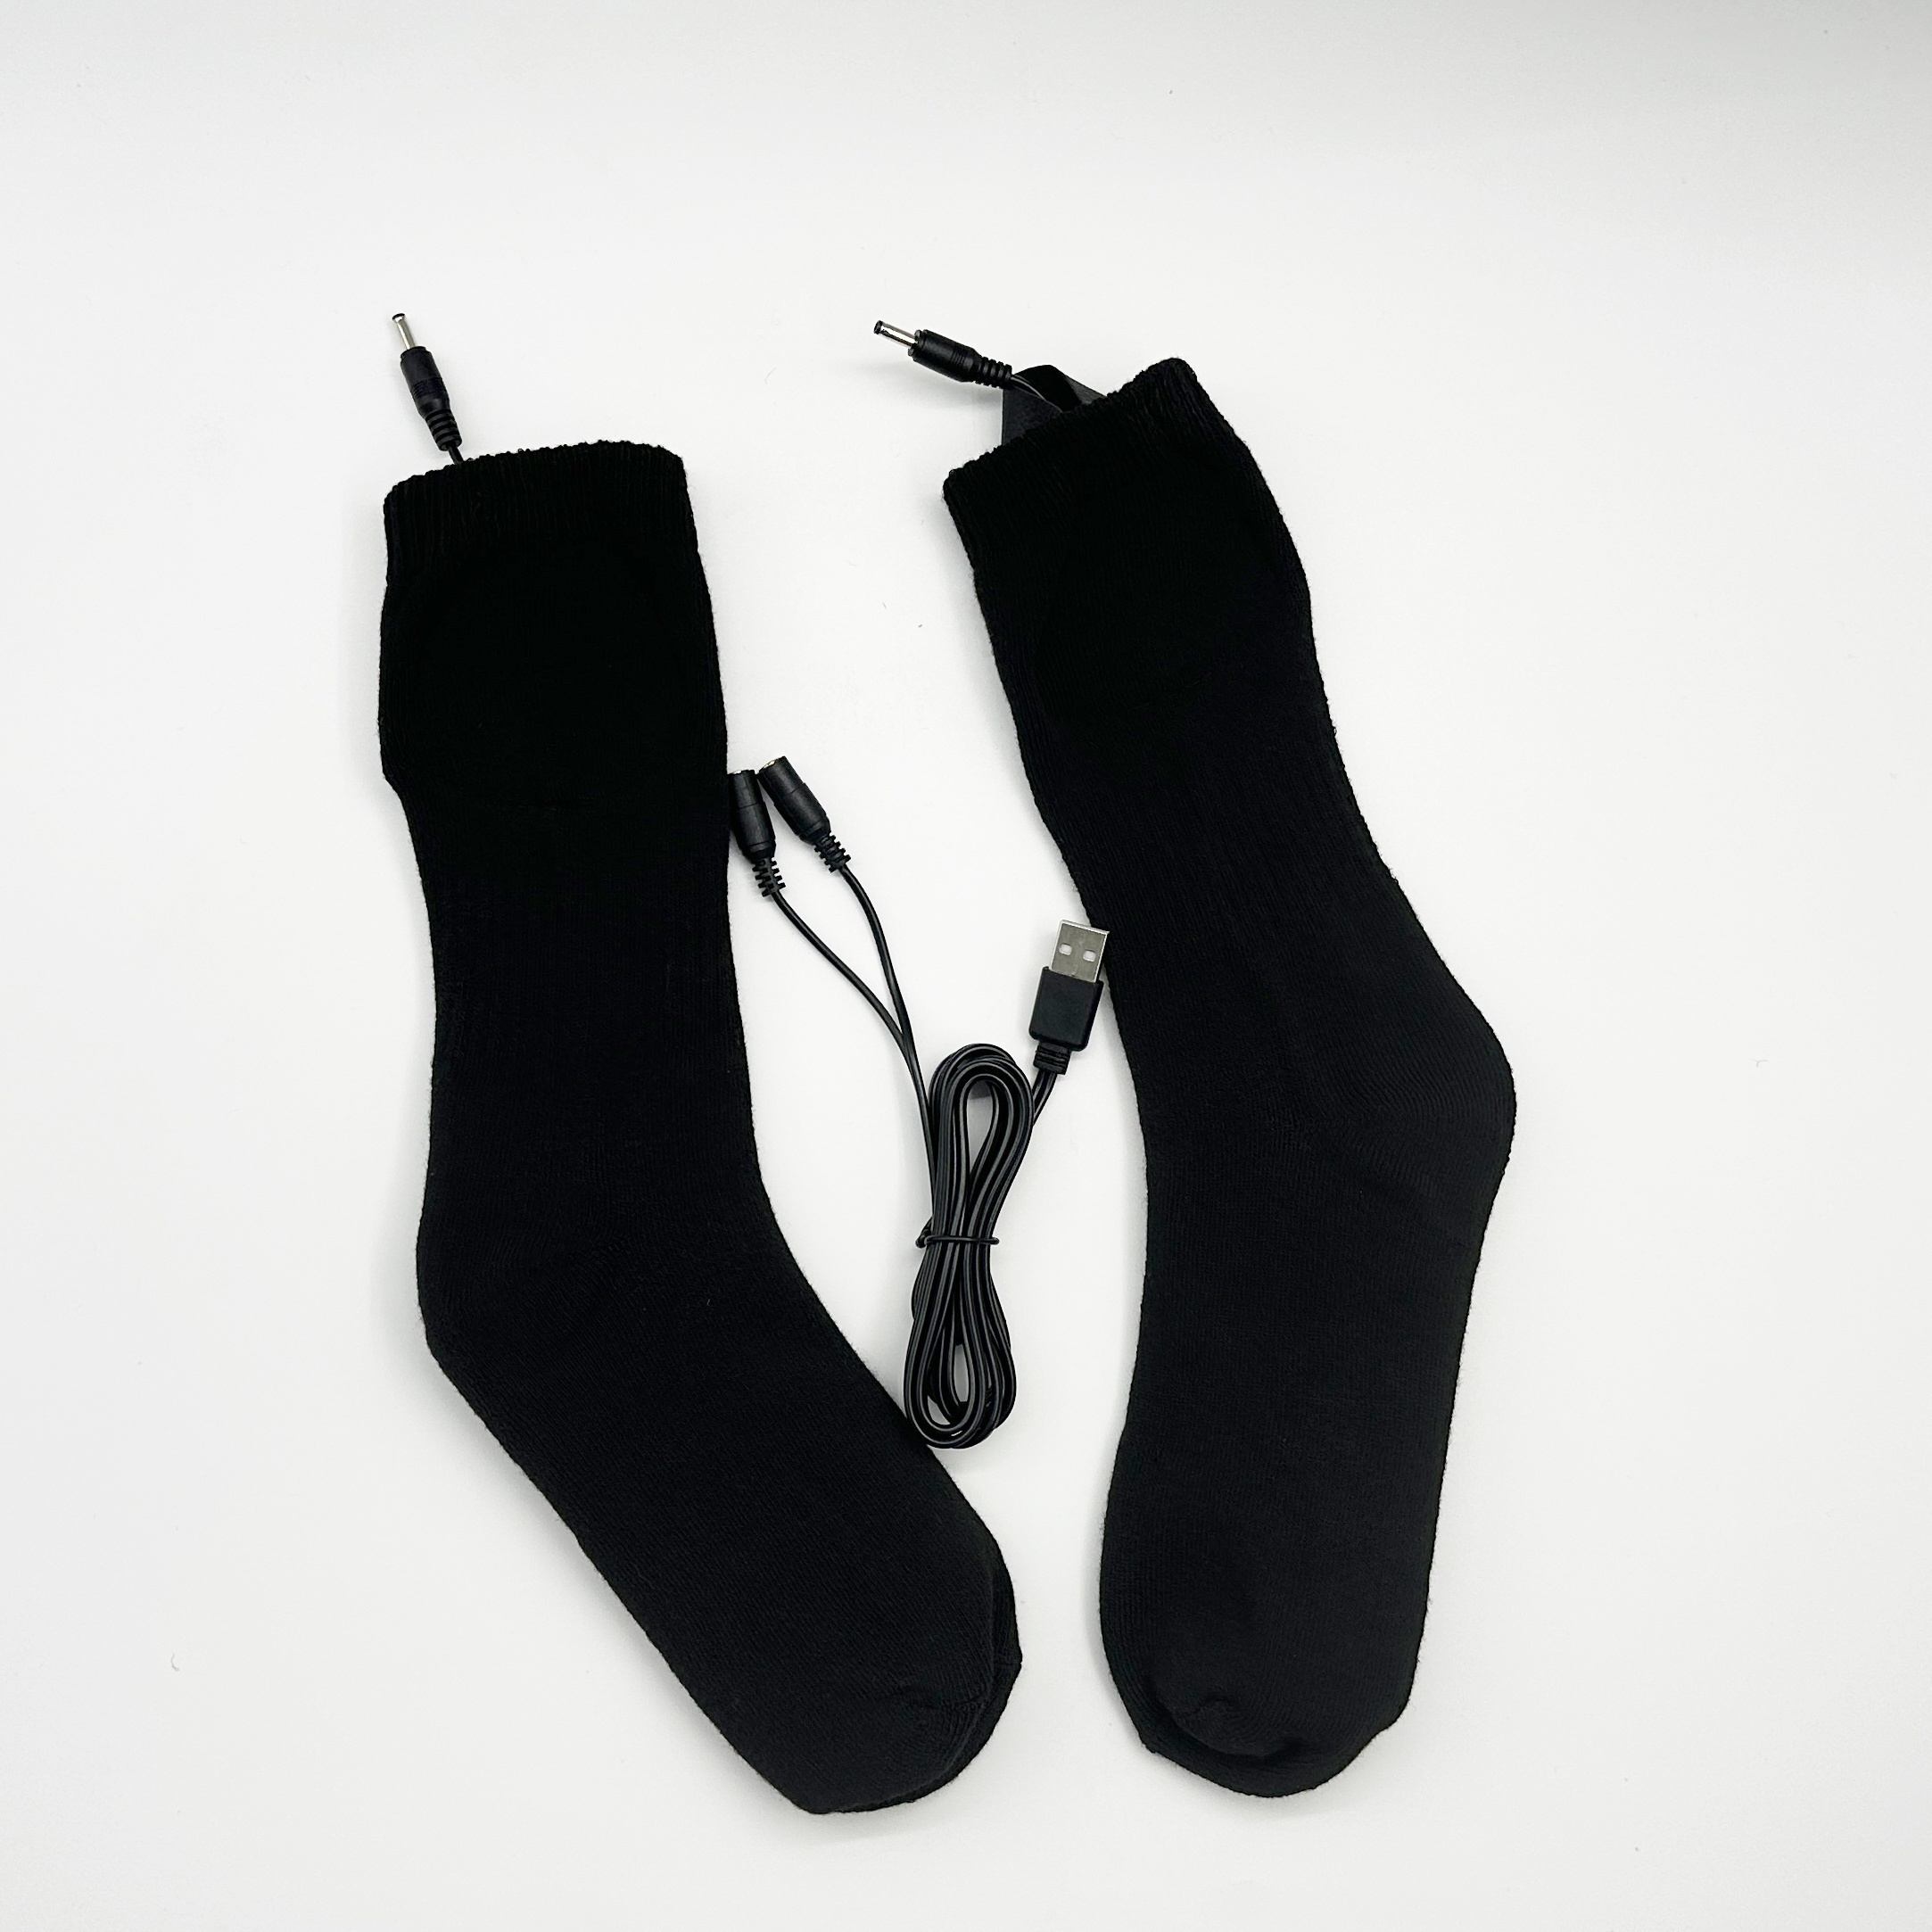 Calcetines calefactables anticongelantes Calentamiento de pies Transpirable  Hombres Mujeres Invierno kusrkot Calcetines Calefactables